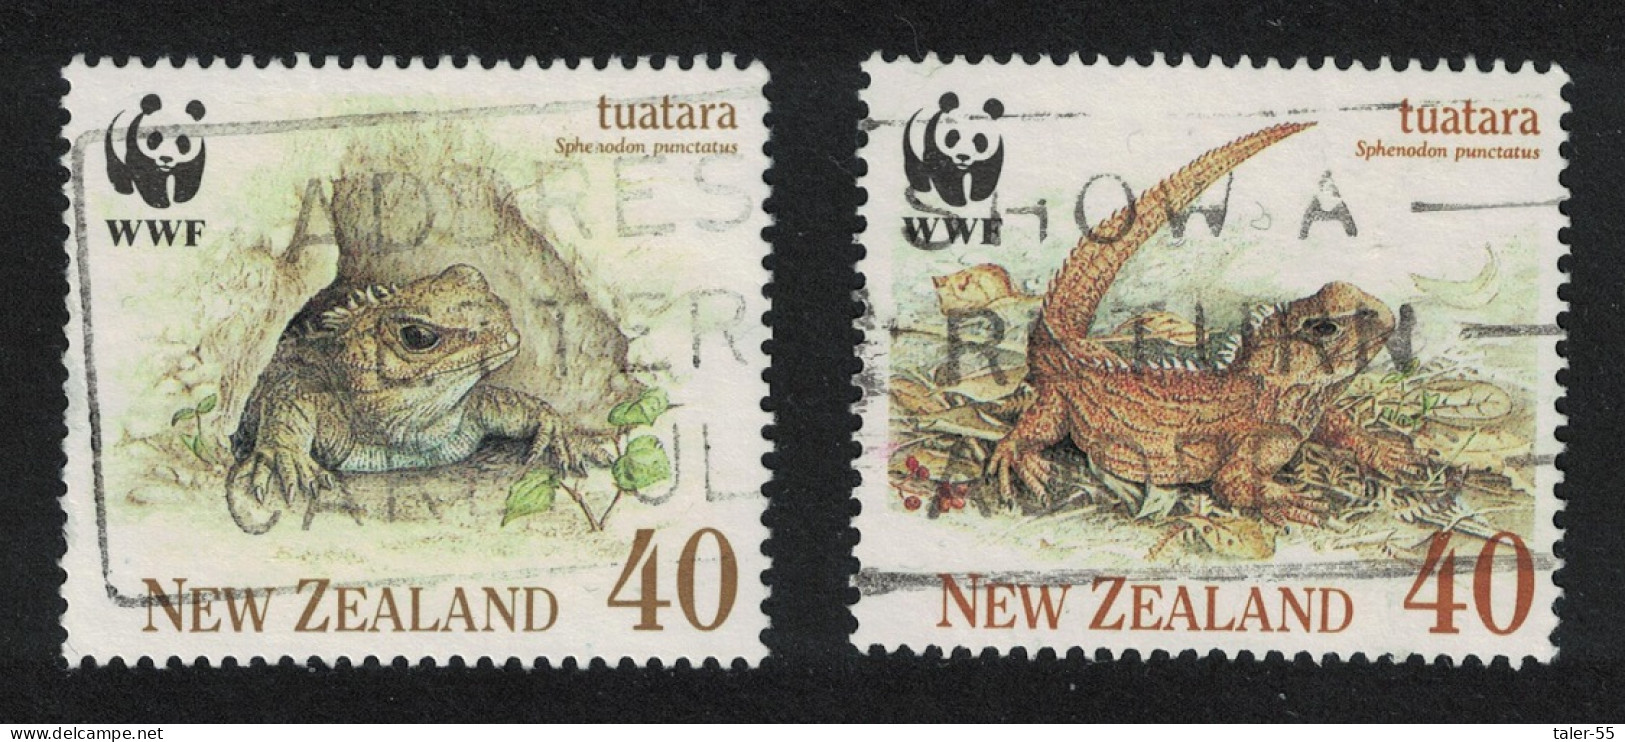 New Zealand WWF Tuatara 2V 1991 Canc SG#1590-1593 MI#1160-1163 Sc#1023-1026 - Usados